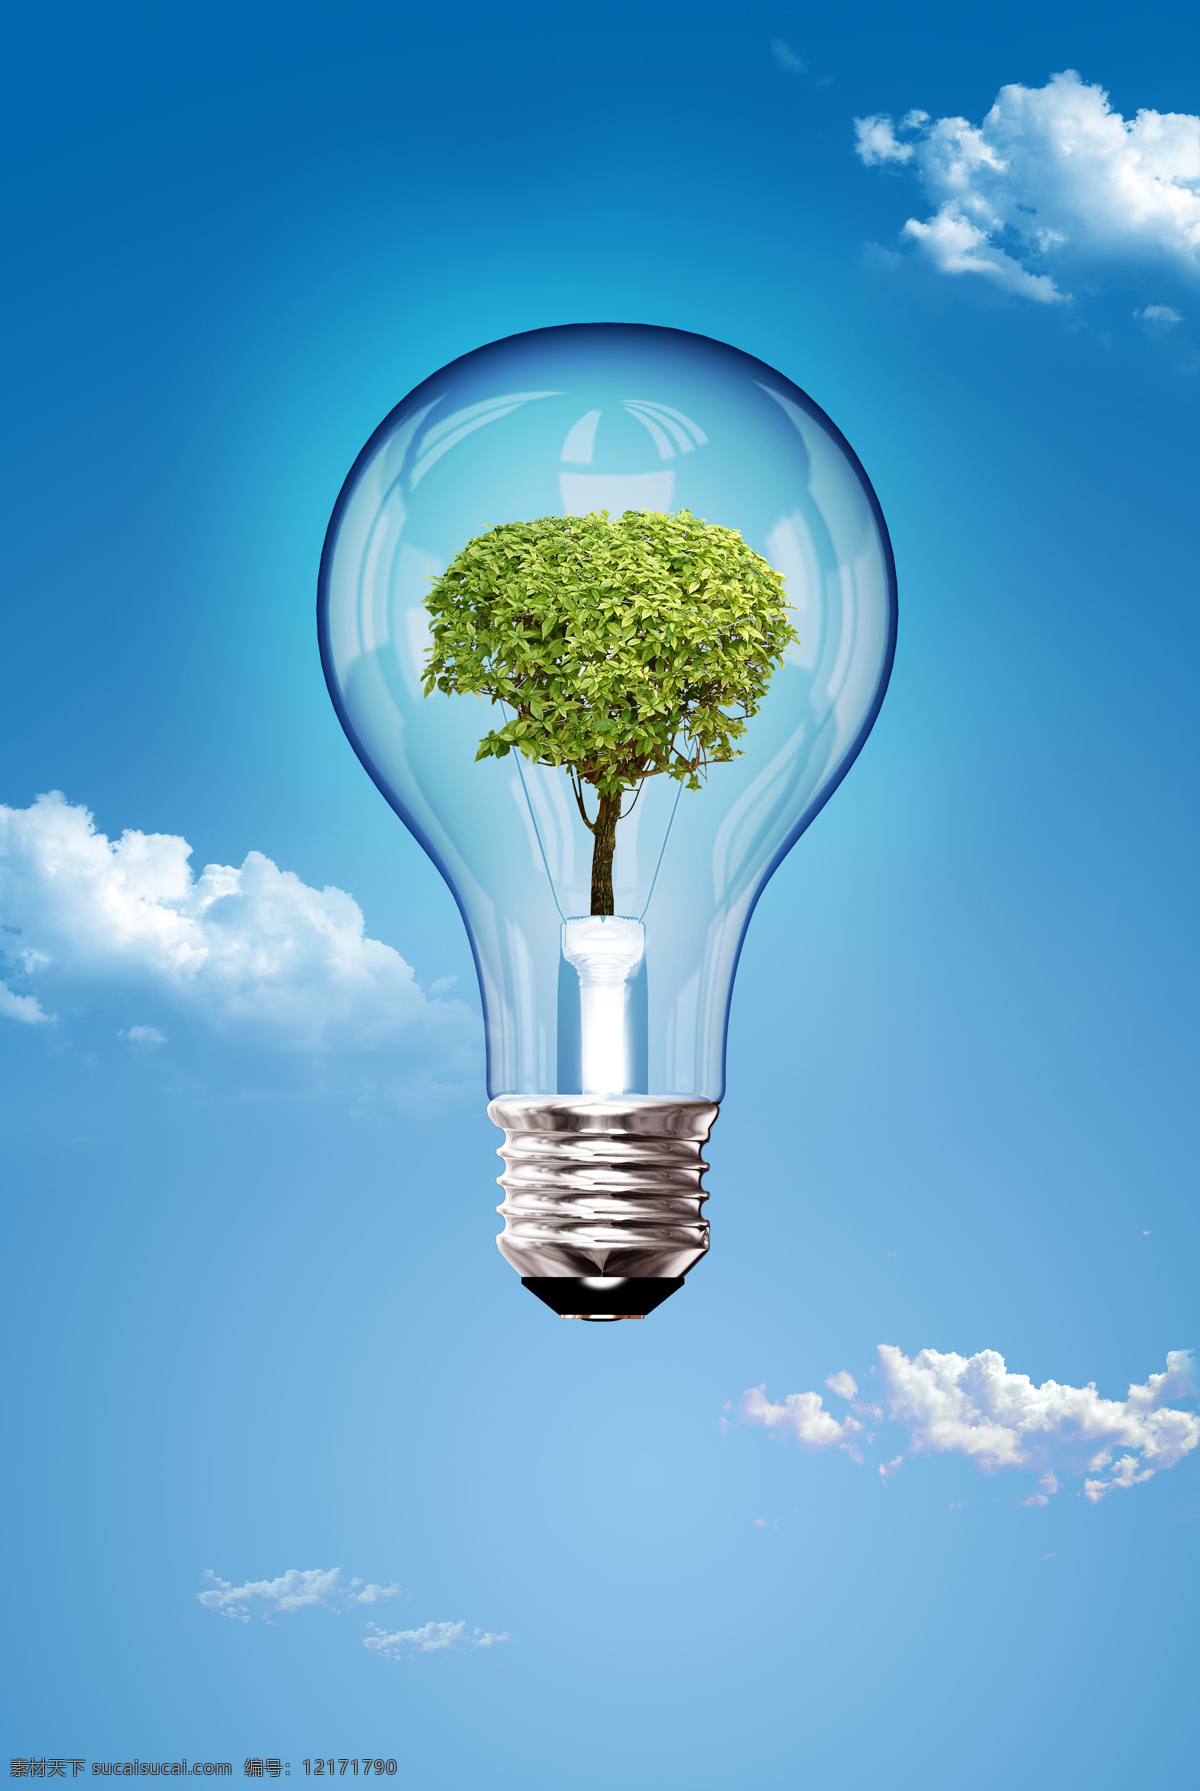 灯泡图片下载 环保灯泡 透明灯泡 蓝天白云 绿色树木 高清图片